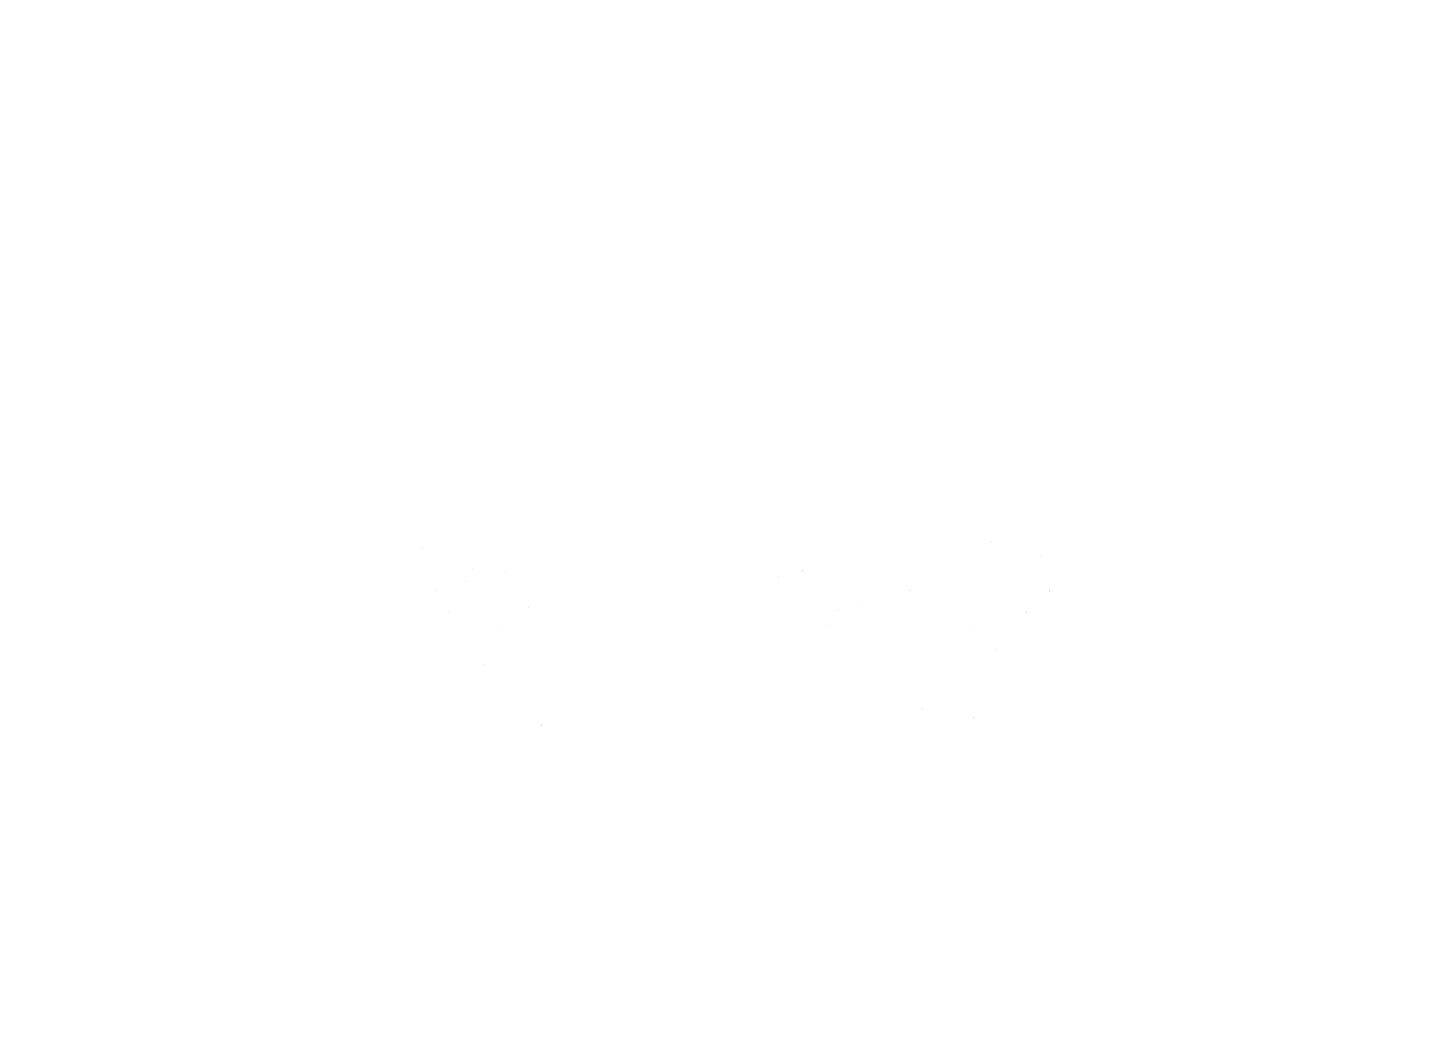 嬬恋村観光協会のロゴデザイン